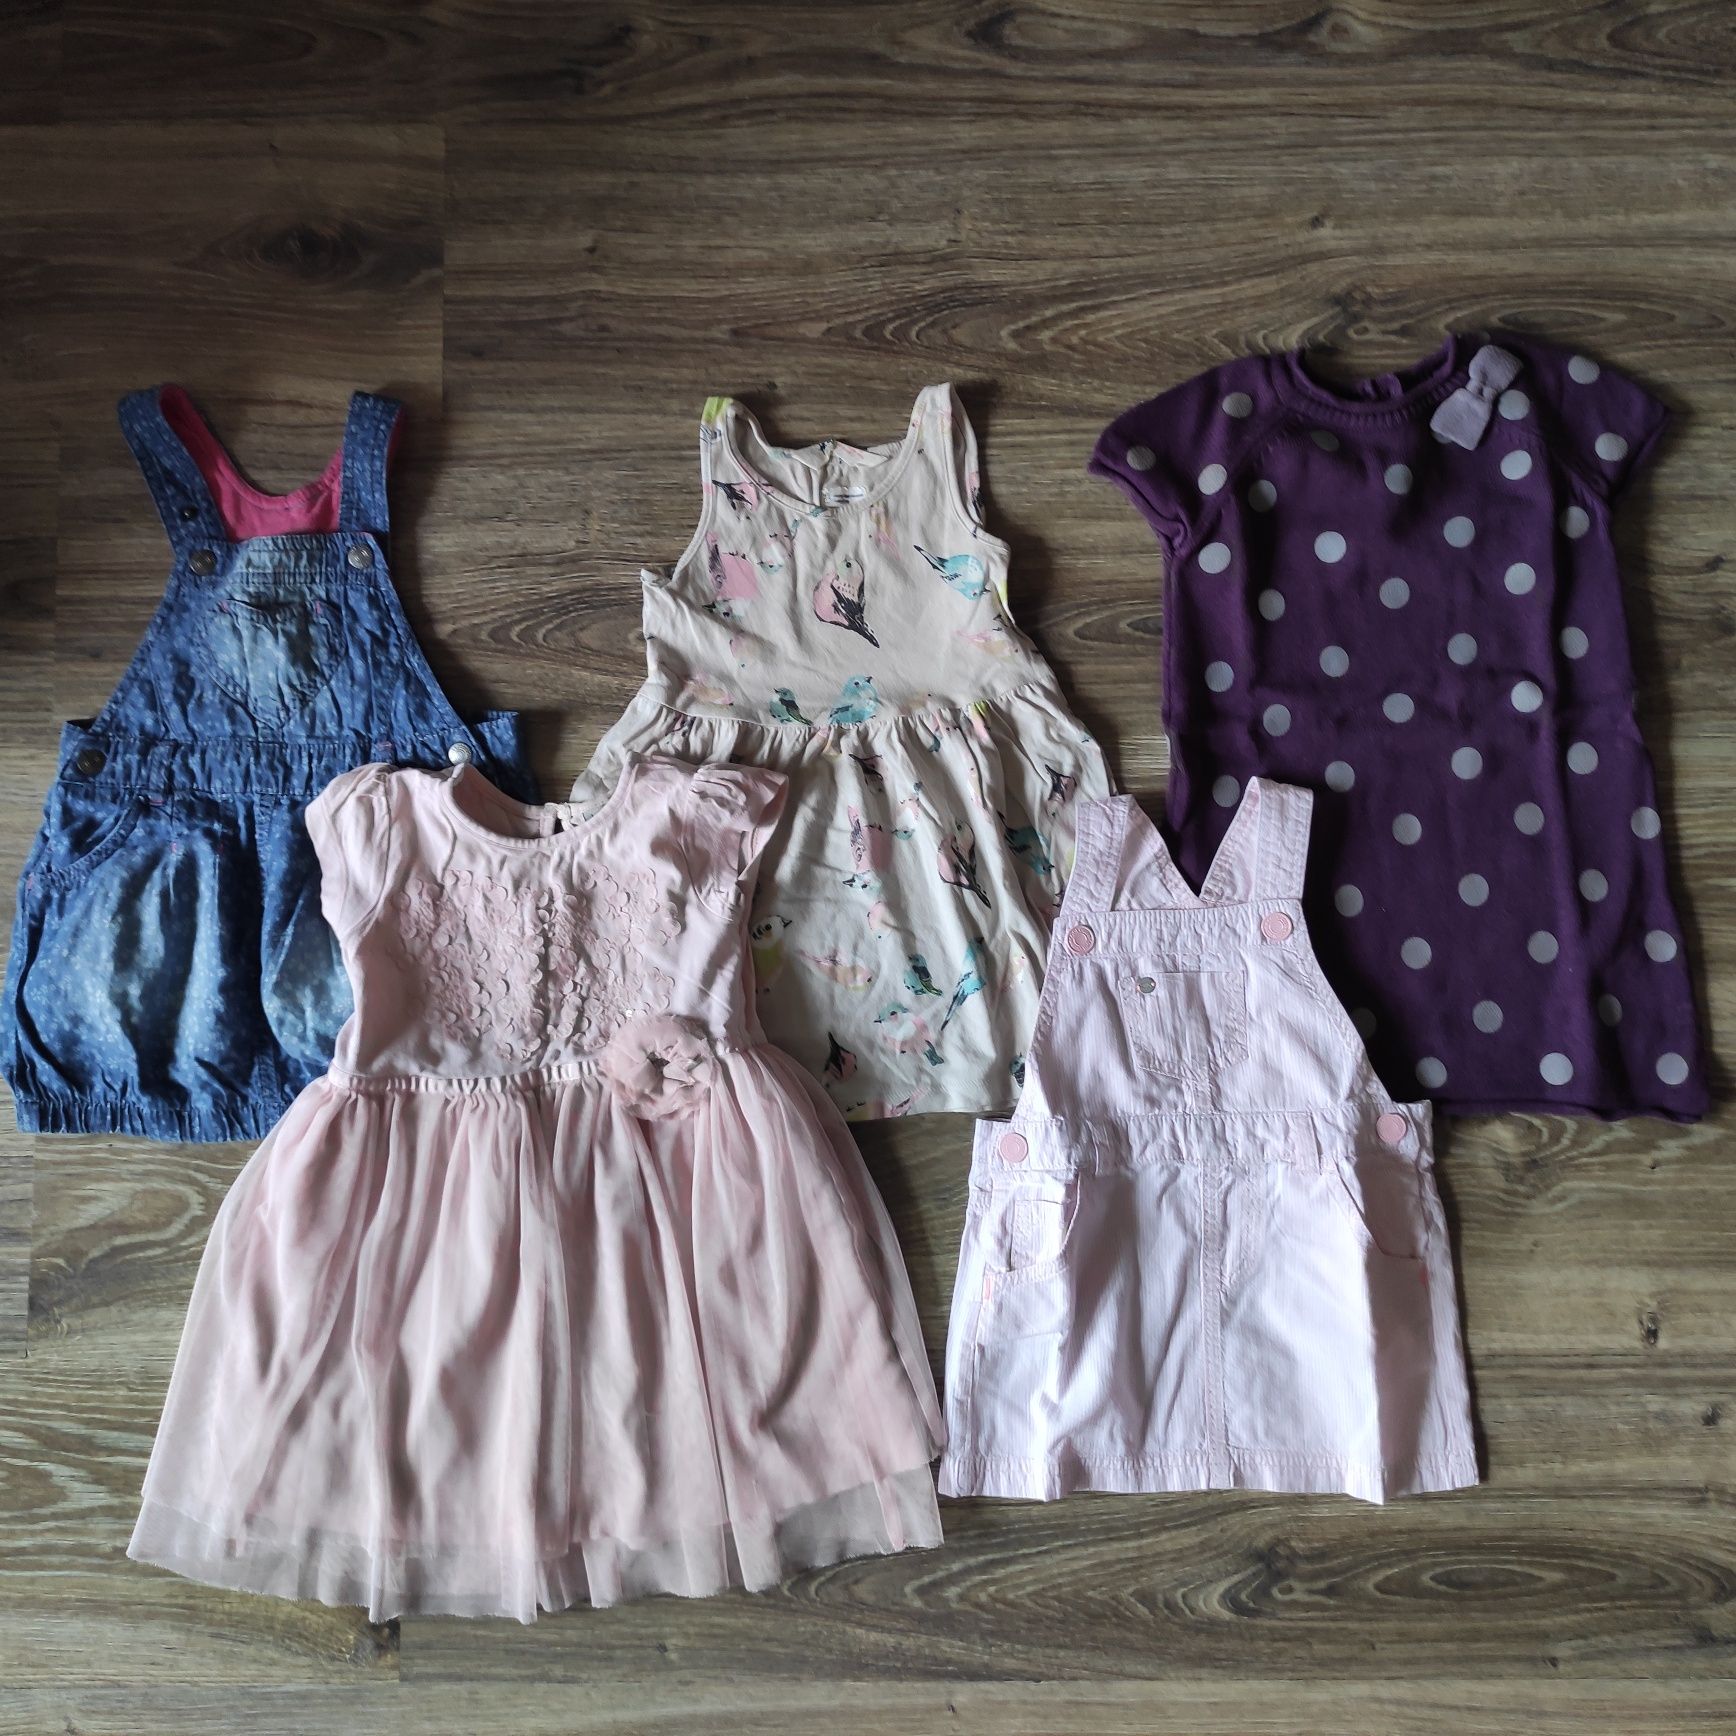 Komplet 21 sztuk ubrań dla dziewczynki 1,5-2 lata (86-92 cm)